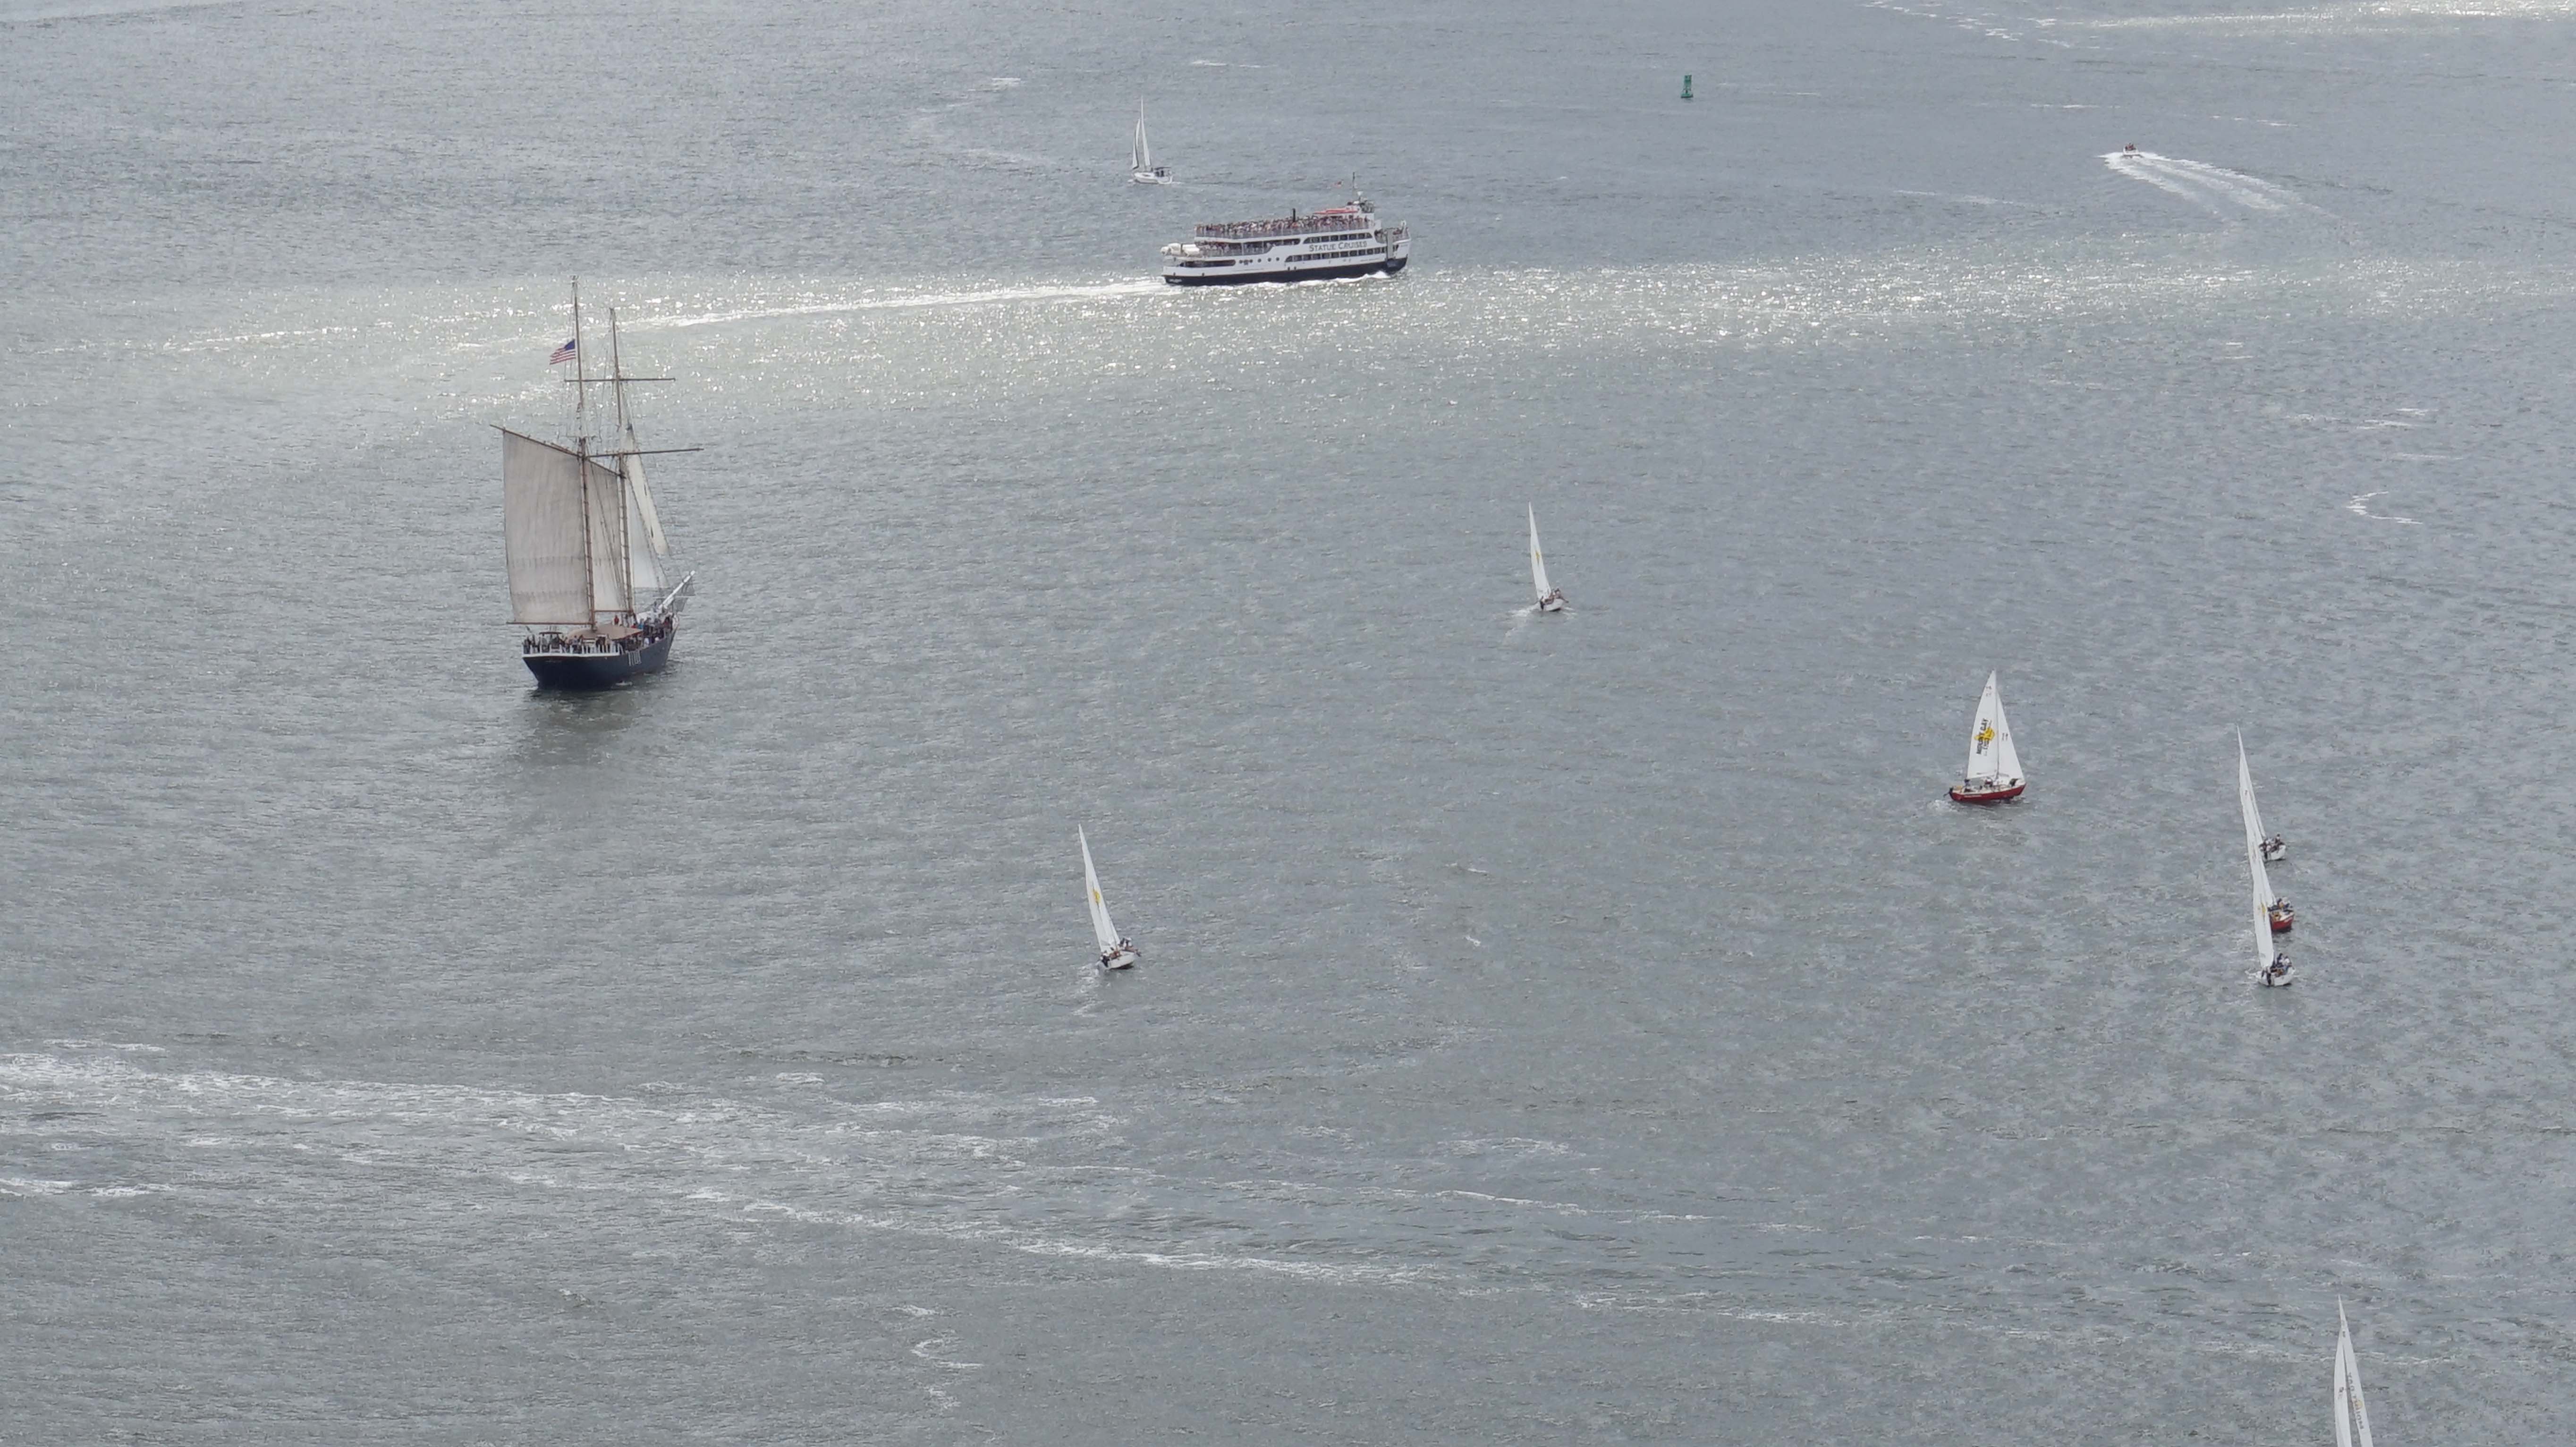 Boat races in Harbor 8-15-2014